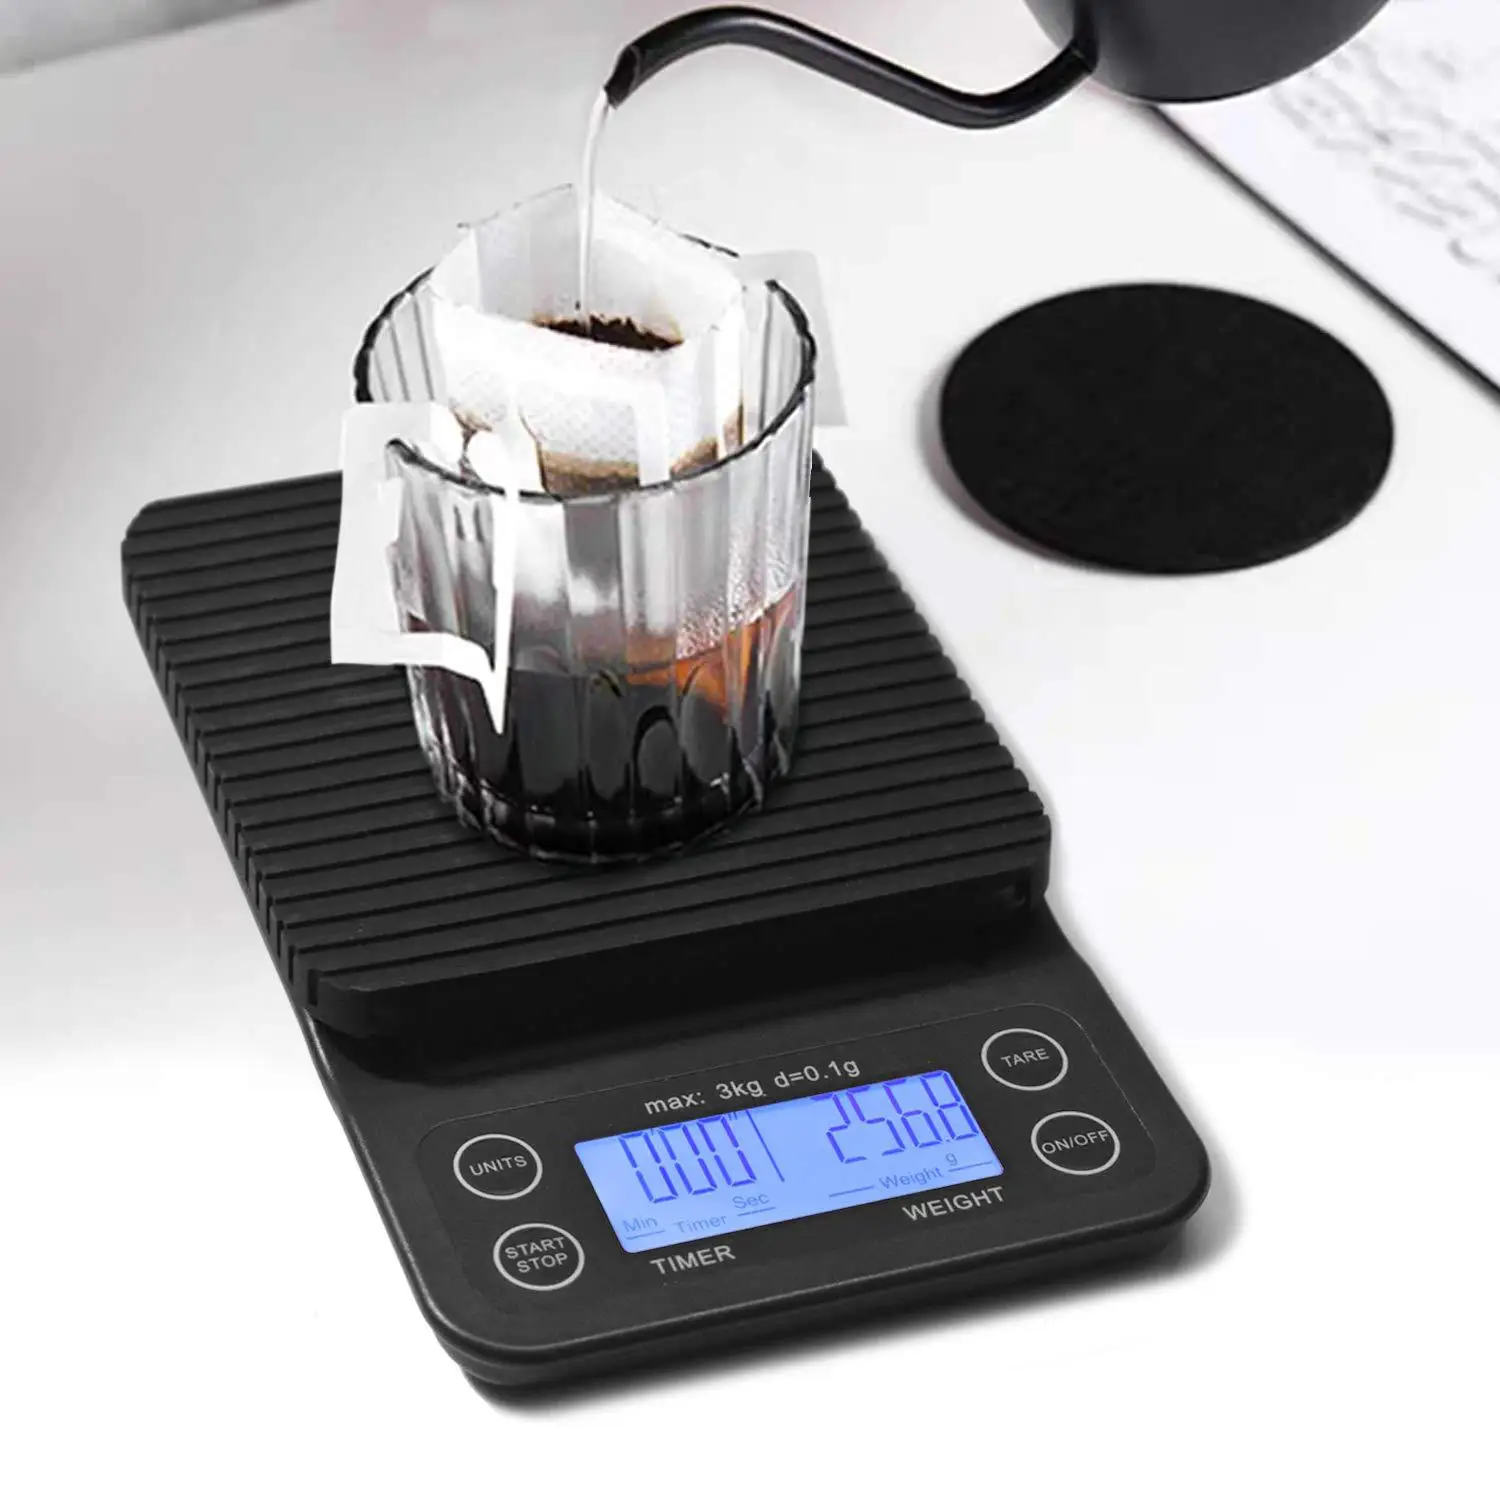 

Умные Электронные весы для кофе ручной работы, высокоточные кухонные весы с таймером, черные, 3 кг, 0,1 г, бытовые весы для выпечки продуктов